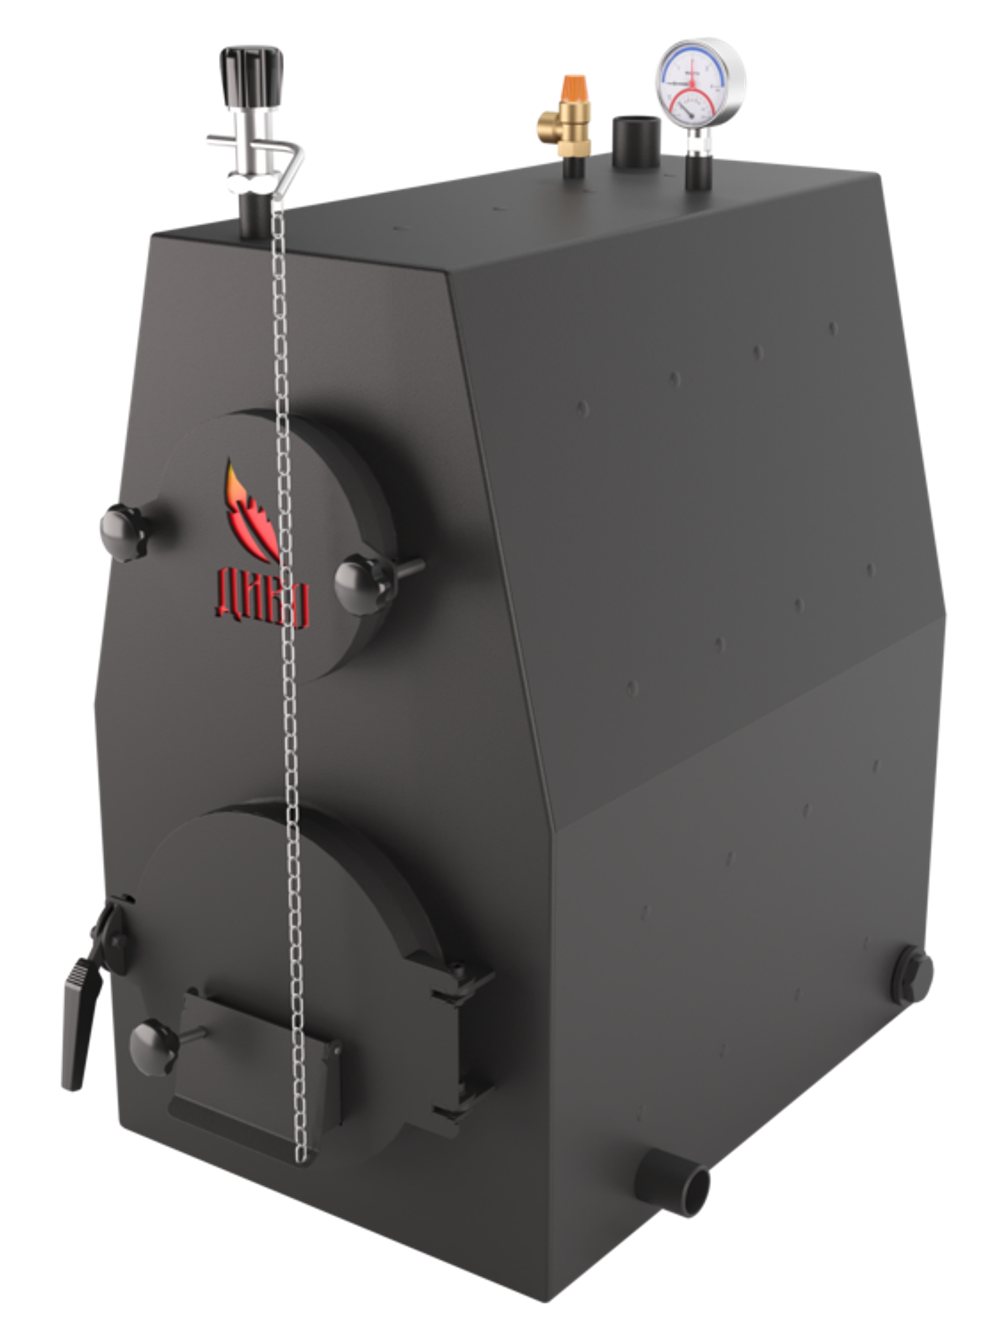 Твердотопливный котел длительного горения ДИВО-100 на 100 кВт. Помещение до 2700 куб.м